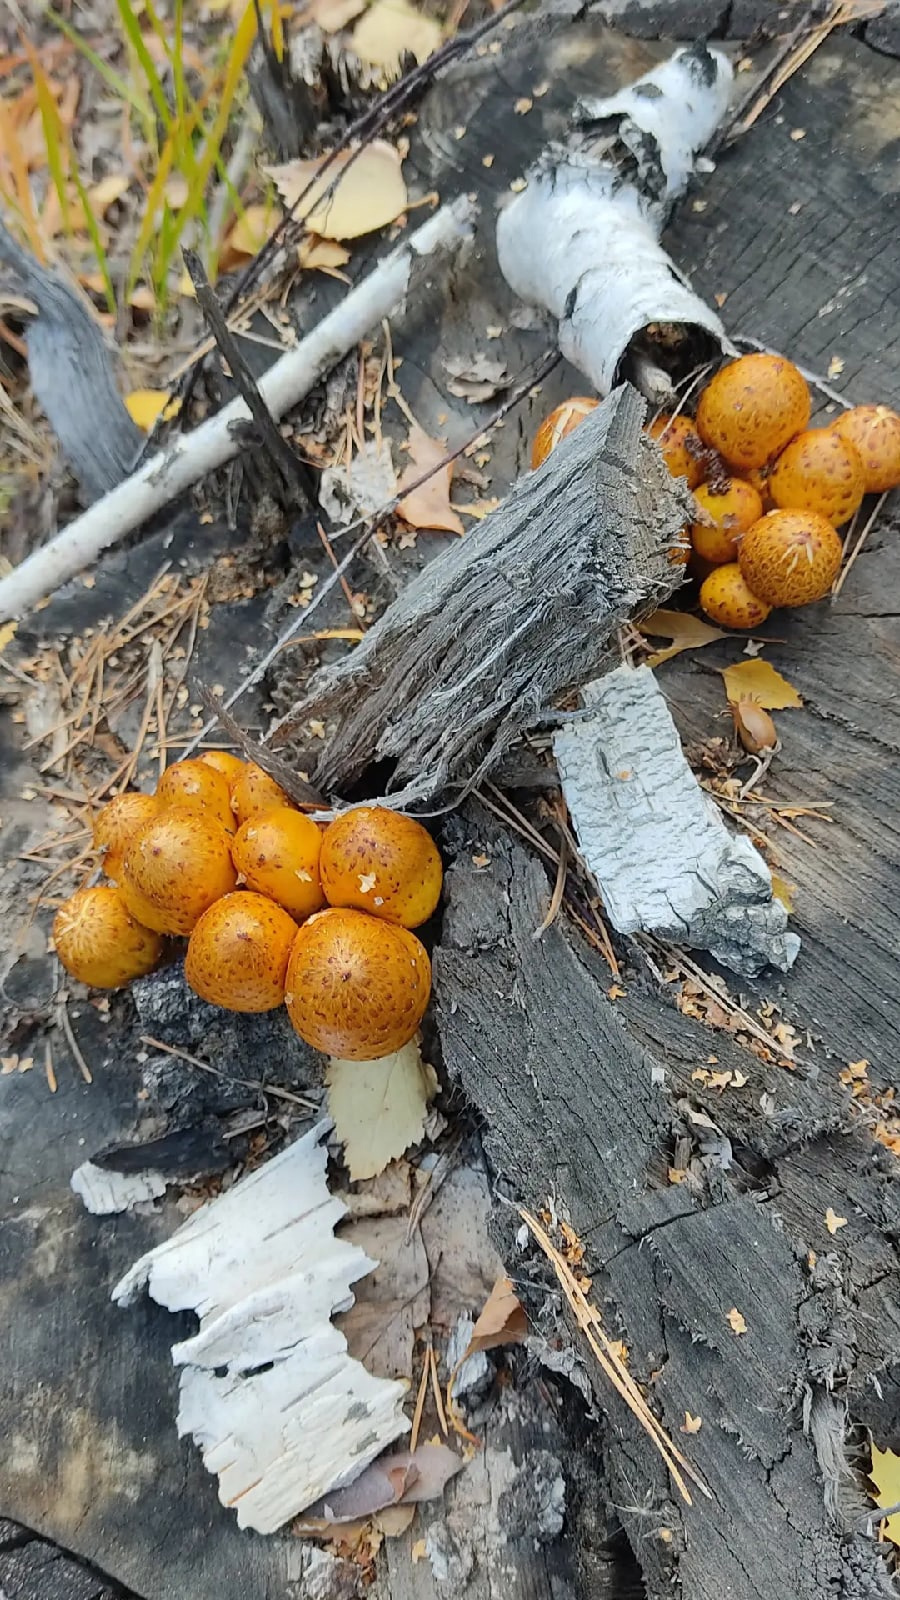 Даже если съедобных грибов вы не найдете, не расстраивайтесь: зато погуляли по лесу